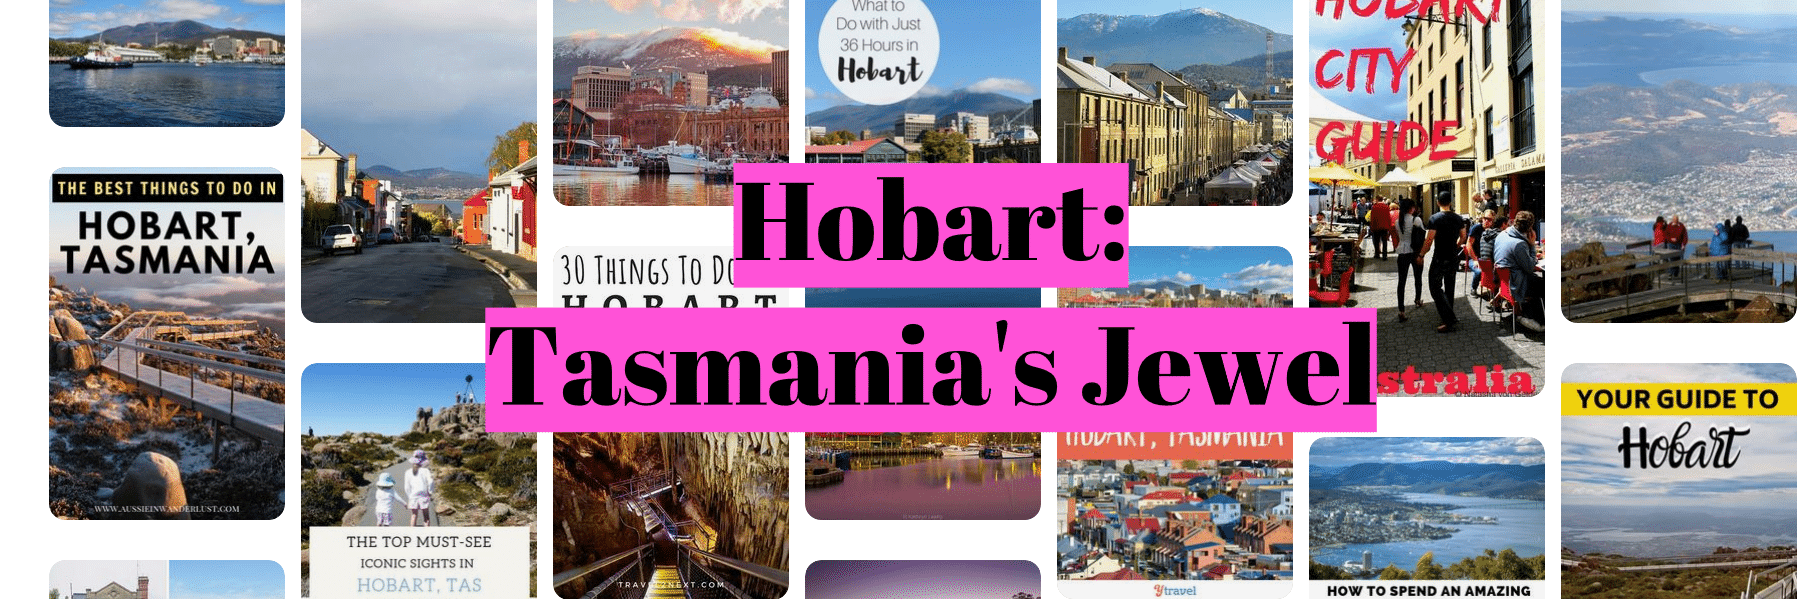 Hobart: Tasmania's Jewel